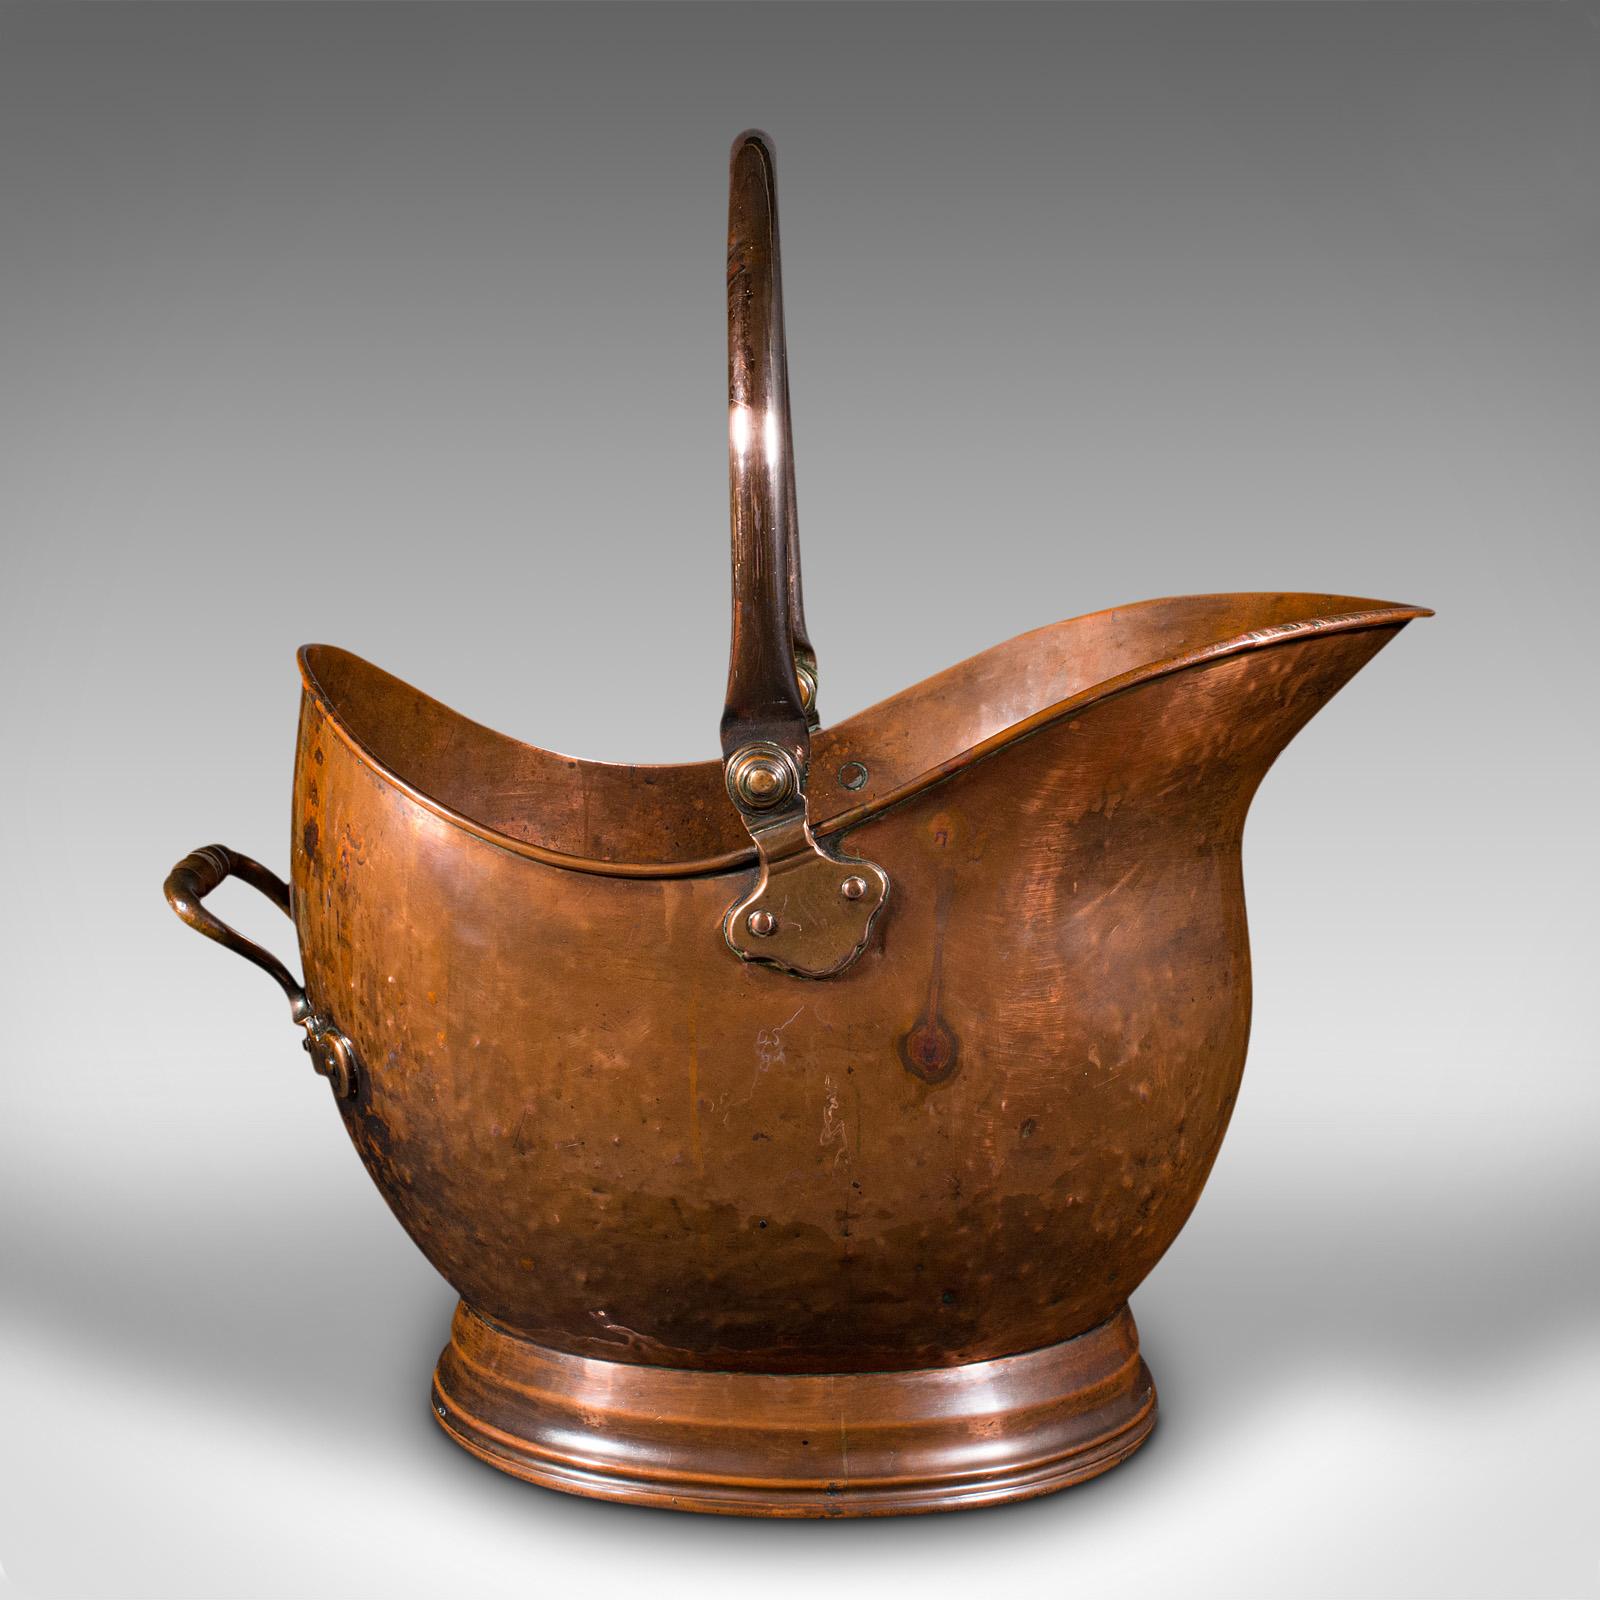 Il s'agit d'un scuttle de casque antique. Seau à charbon ou poubelle de cheminée en cuivre, datant du début de la période victorienne, vers 1850.

Délicieux scuttle en forme de casque avec de merveilleuses teintes chaudes.
Présente une patine